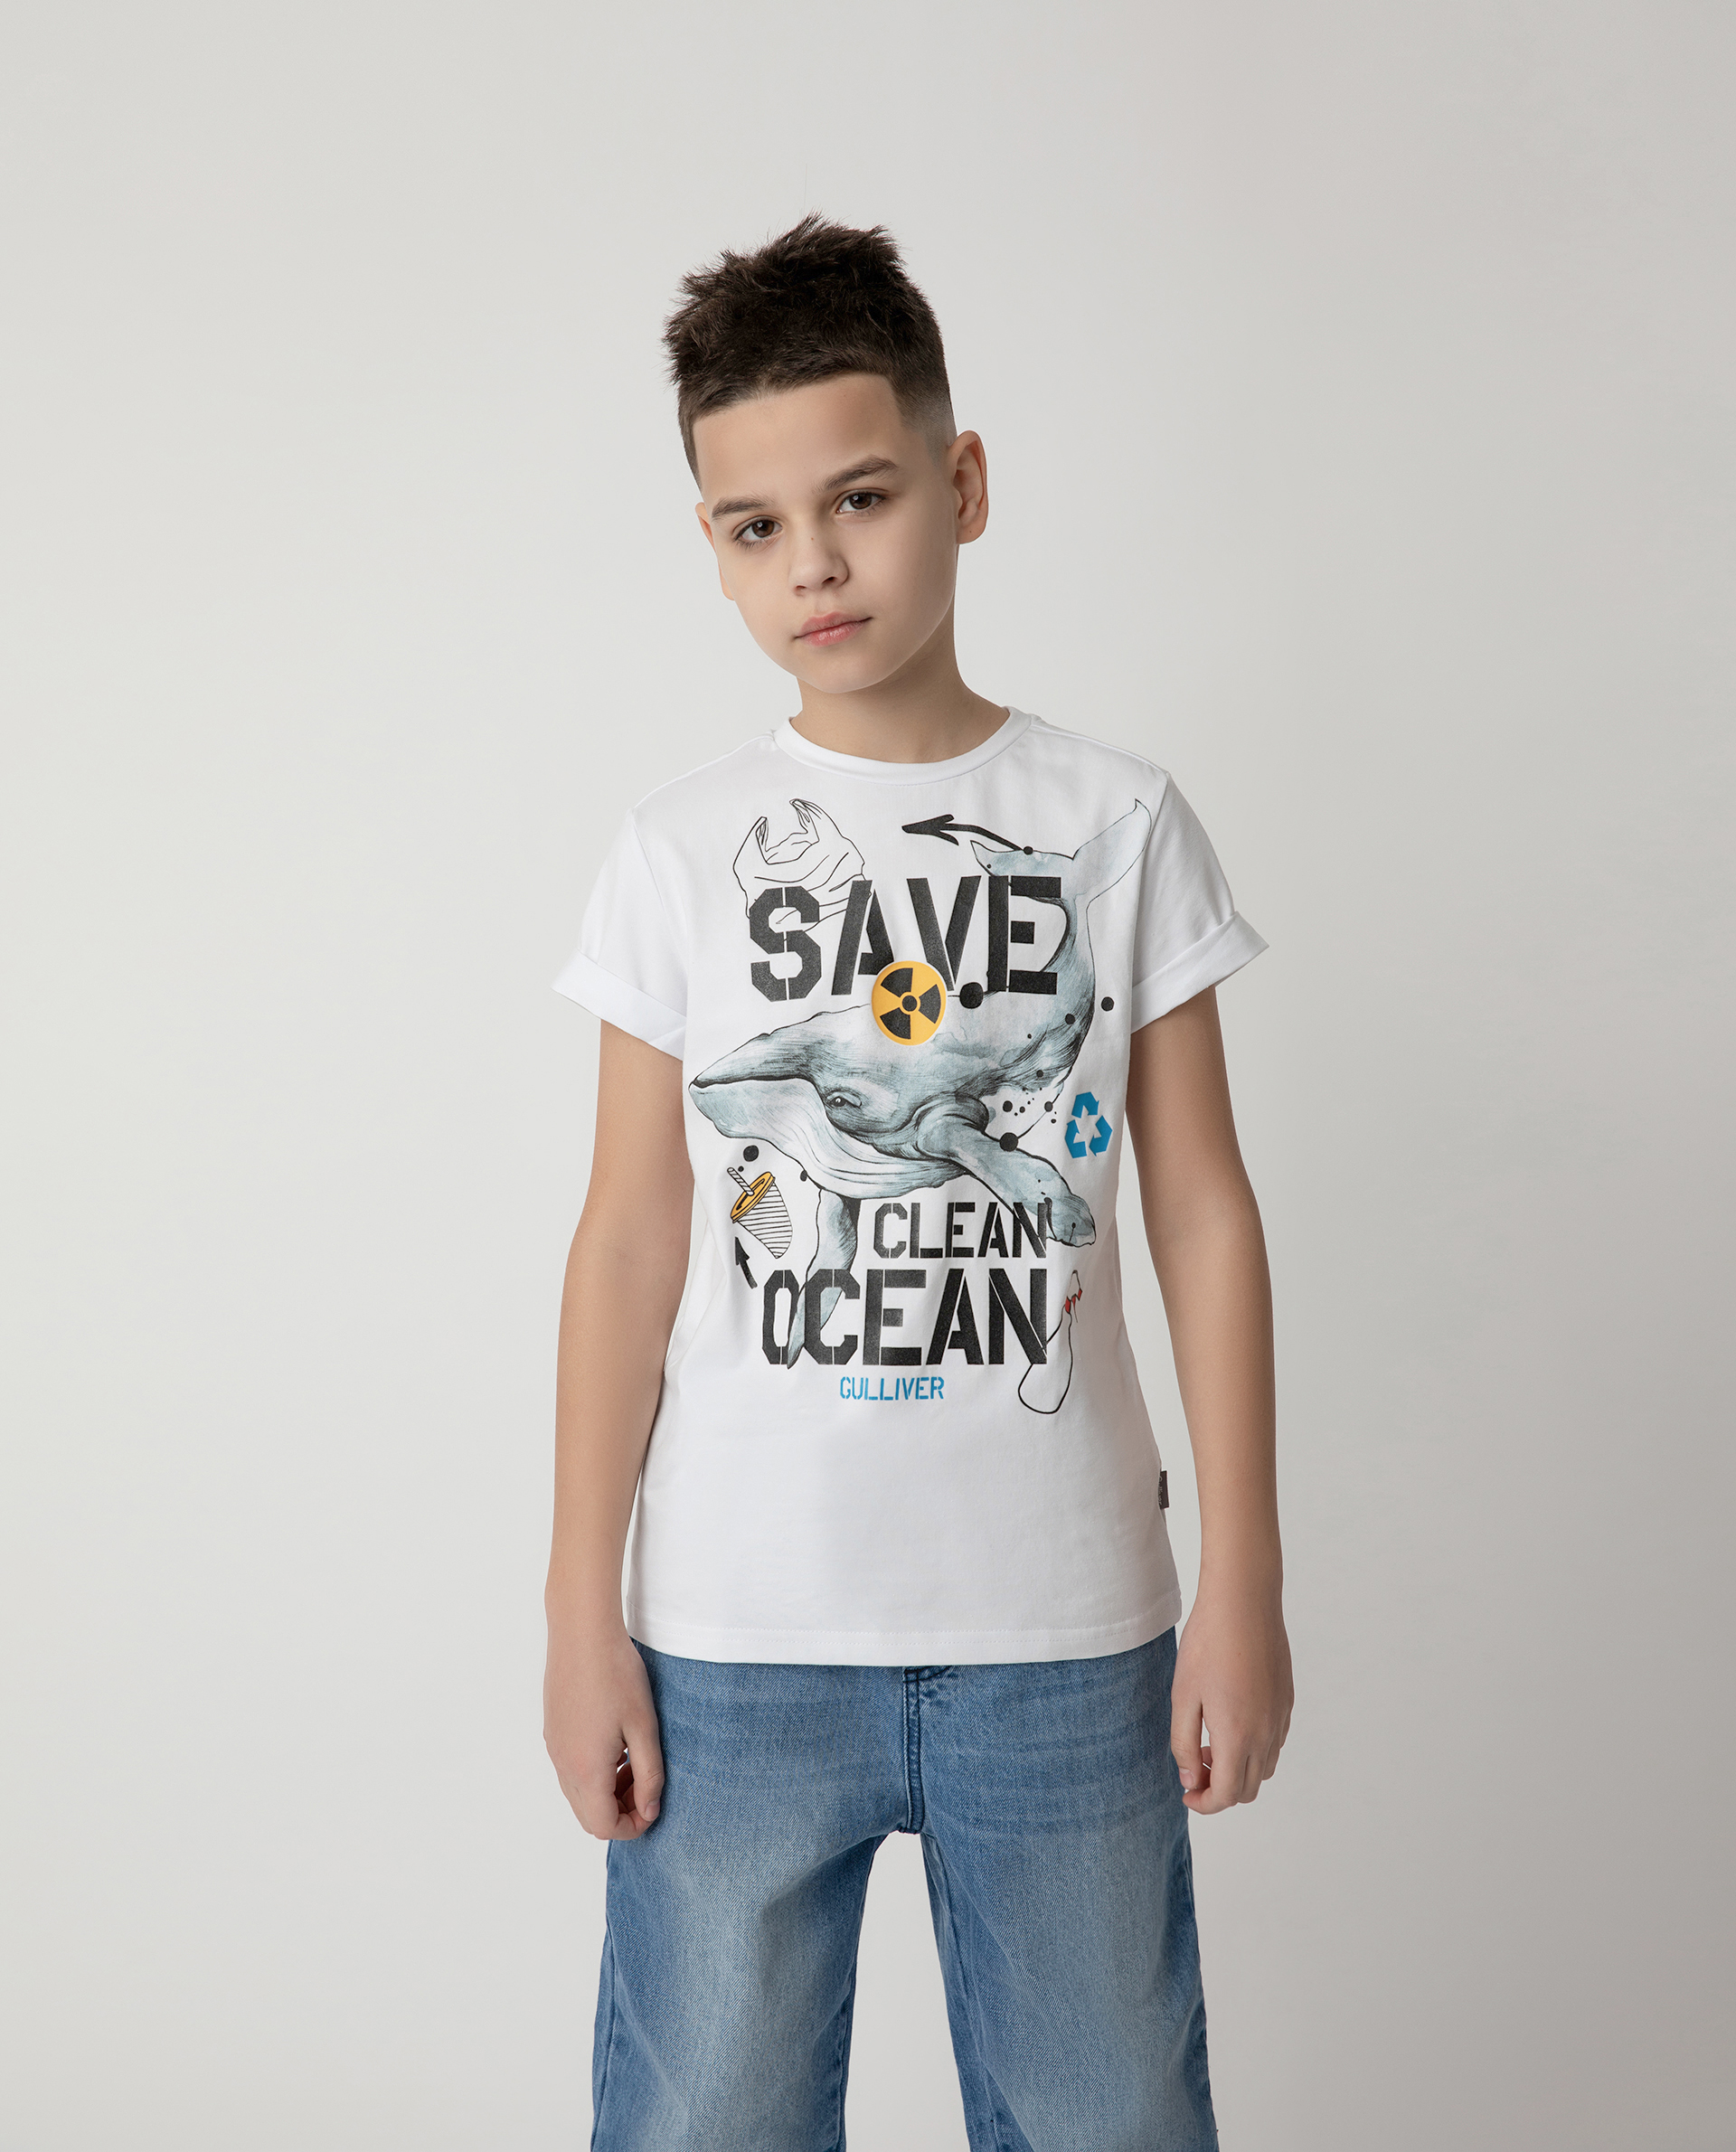 Футболка Save Clean Ocean для мальчика Gulliver 120FBJC1203, размер 164, цвет белый